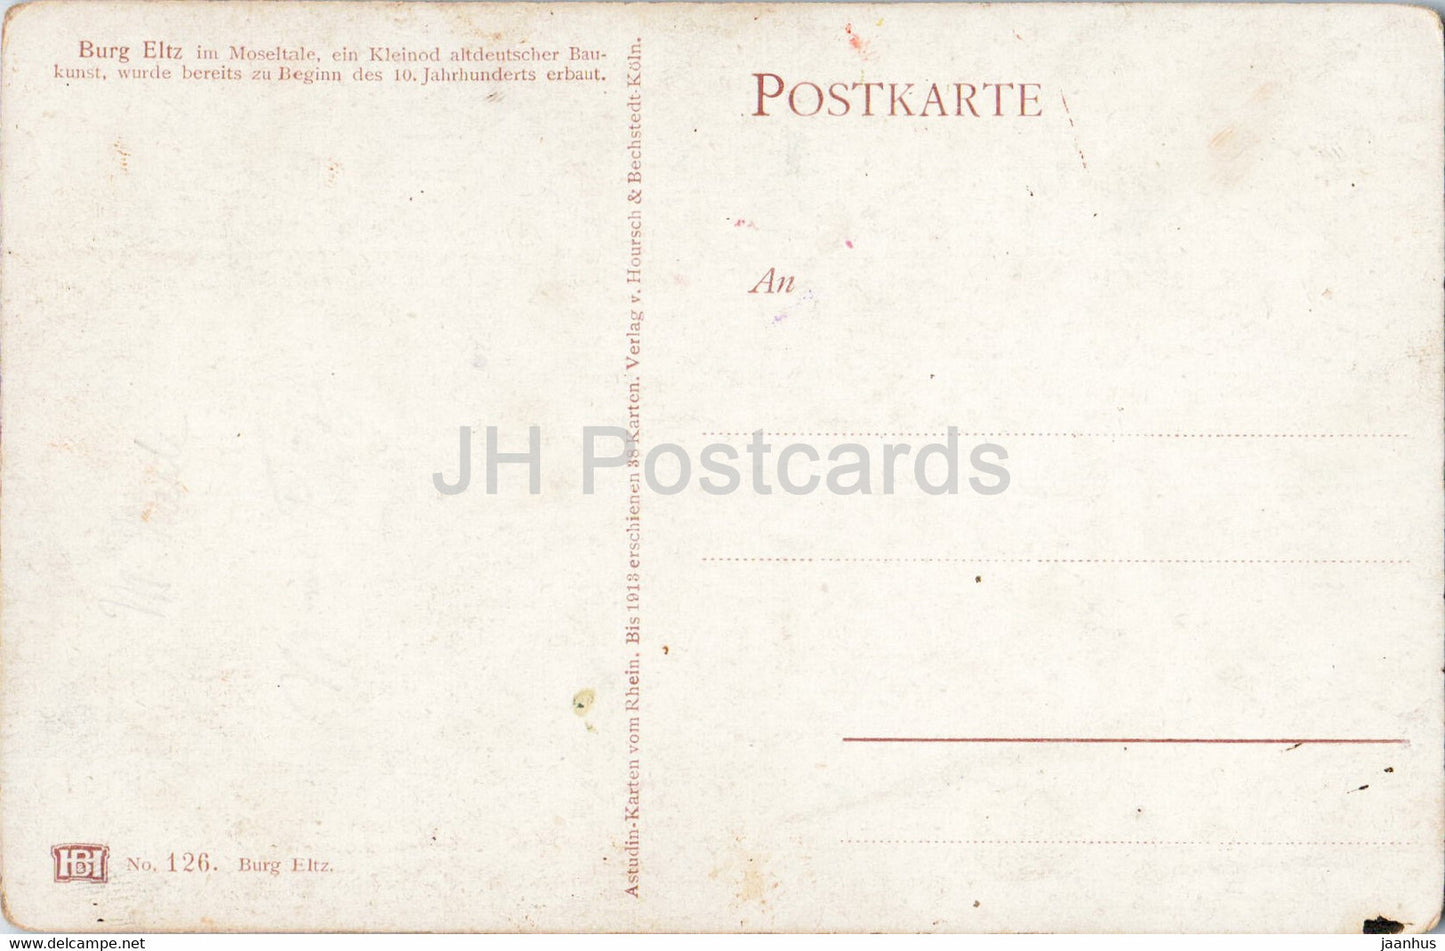 Burg Eltz im Moseltale - Illustration - 126 - alte Postkarte - Deutschland - unbenutzt